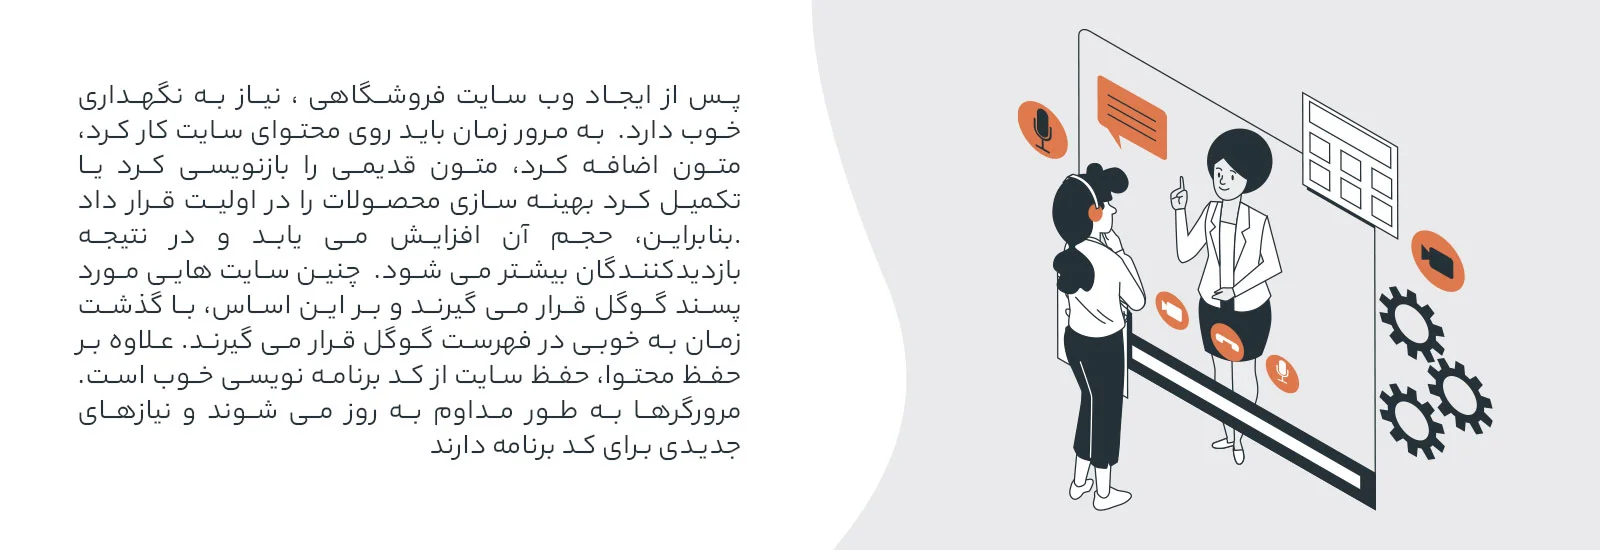 طراحی وب سایت فروشگاهی در تبریز